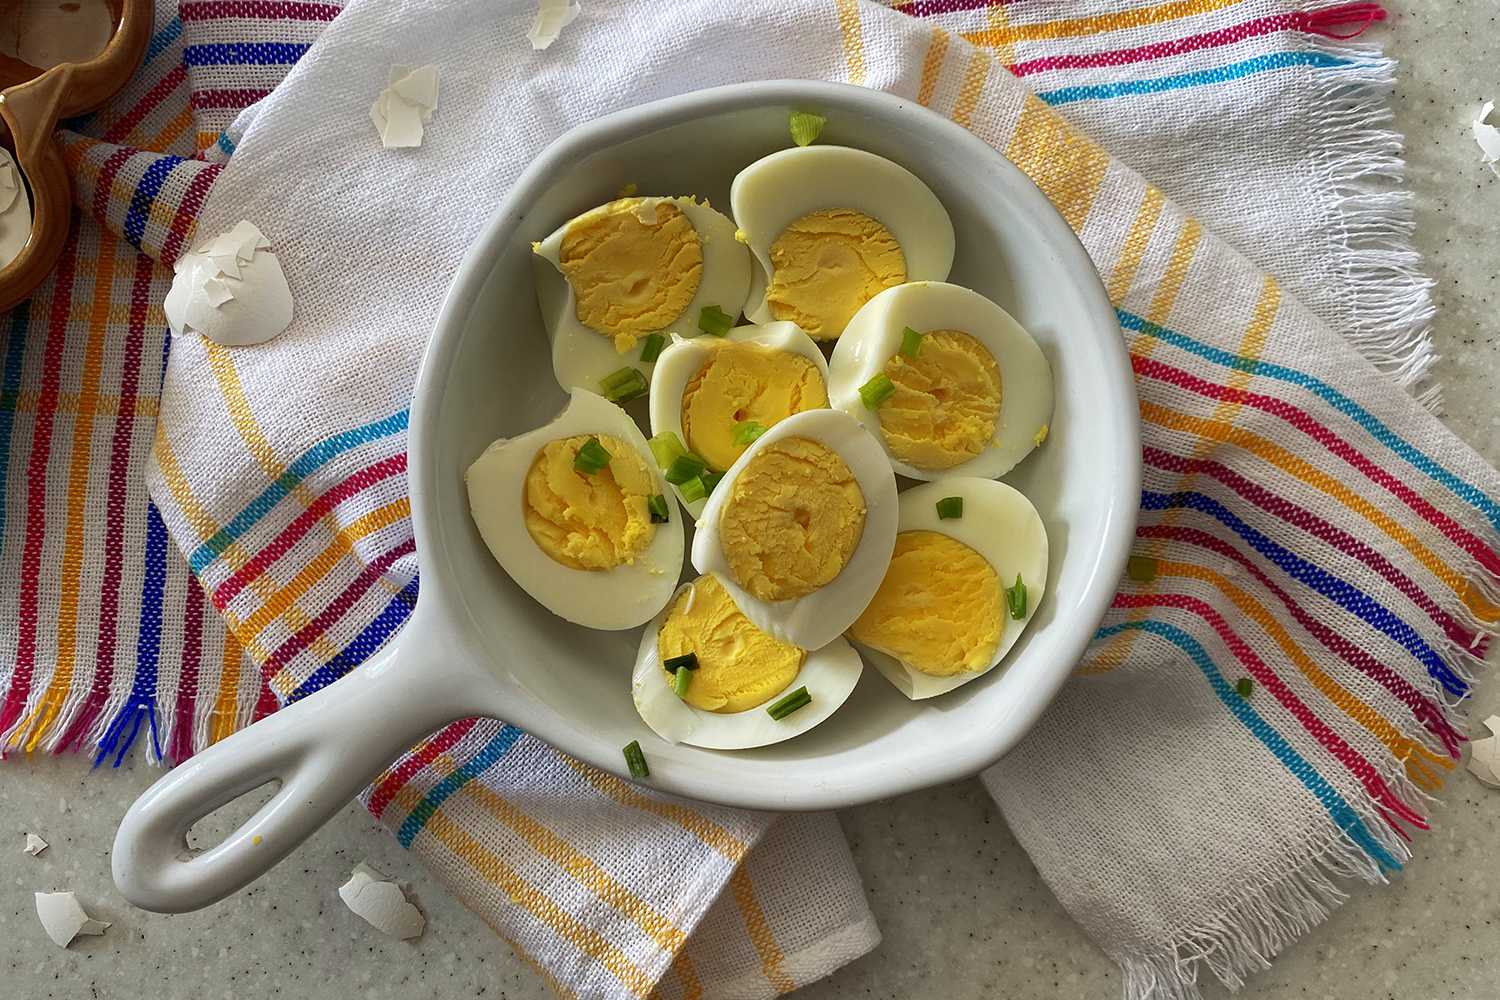 https://www.corriecooks.com/wp-content/uploads/2020/06/Instant-Pot-Hard-Boiled-Eggs8.jpg